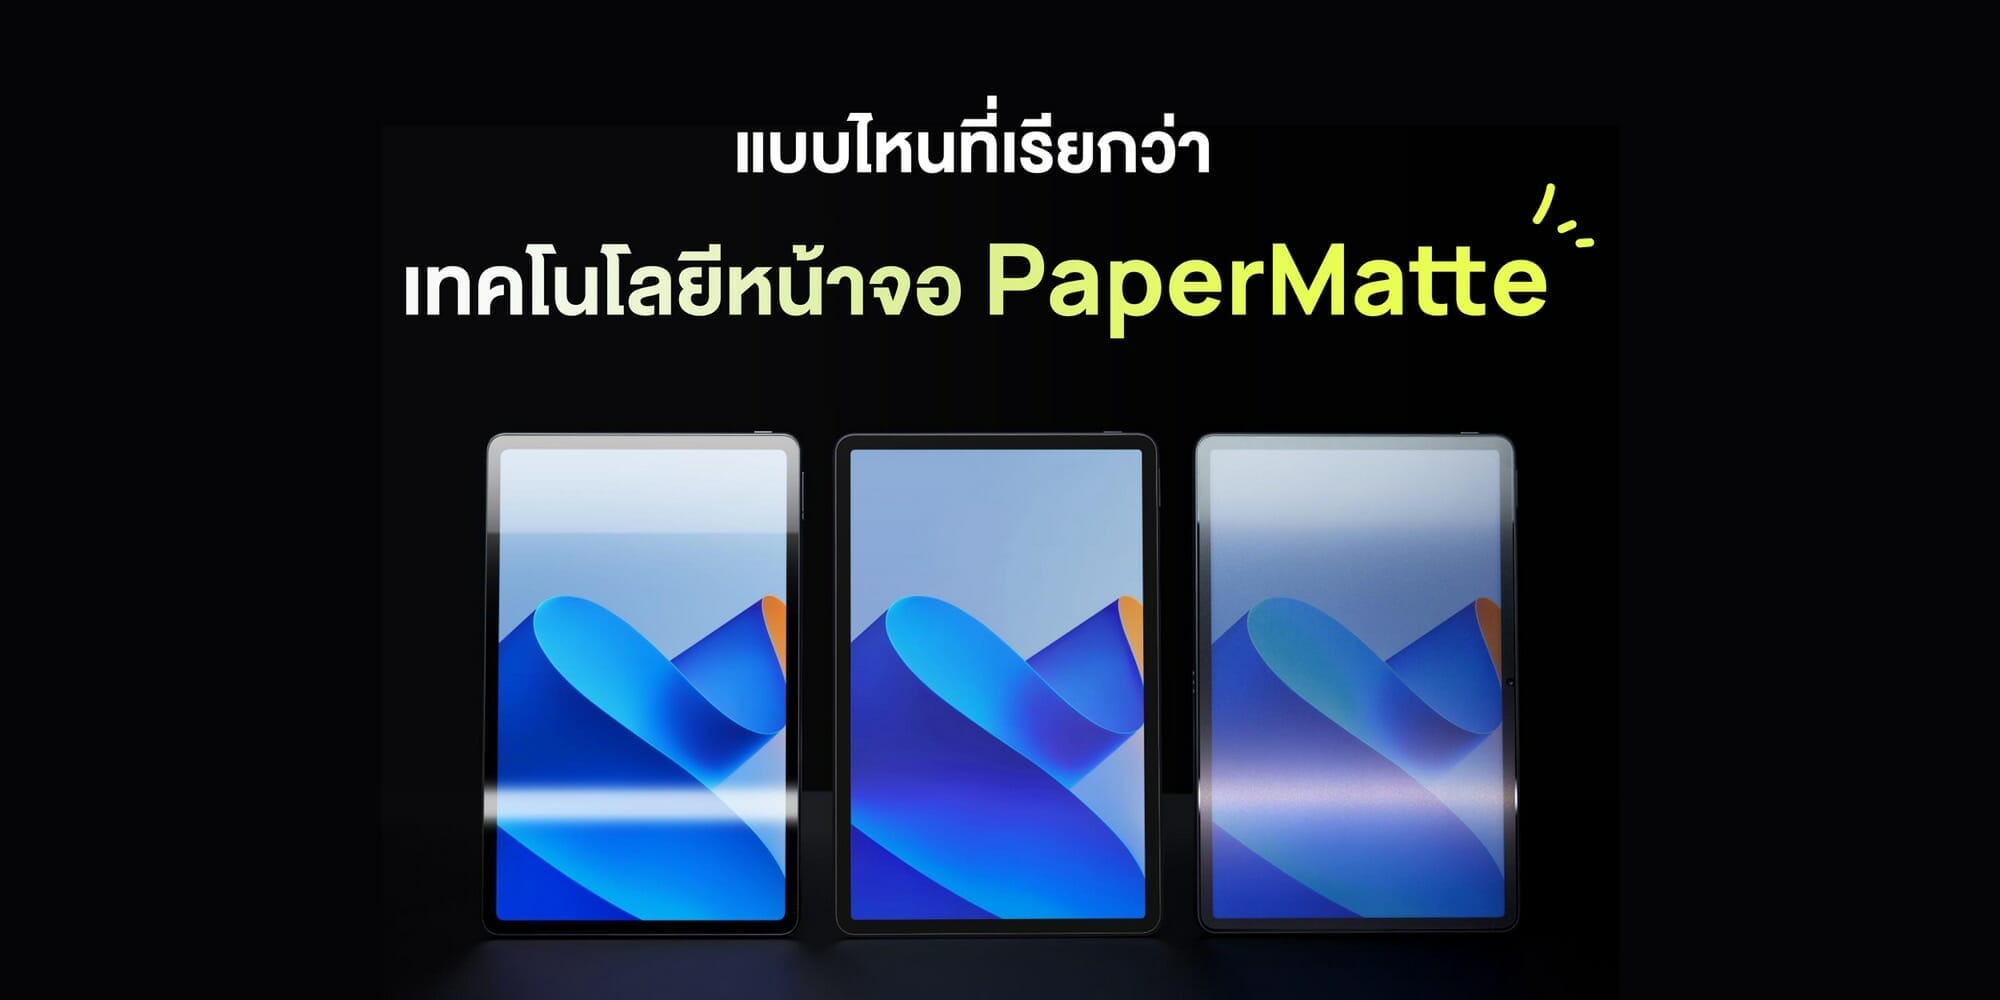 MatePadPaperMatte_KSP_TUV